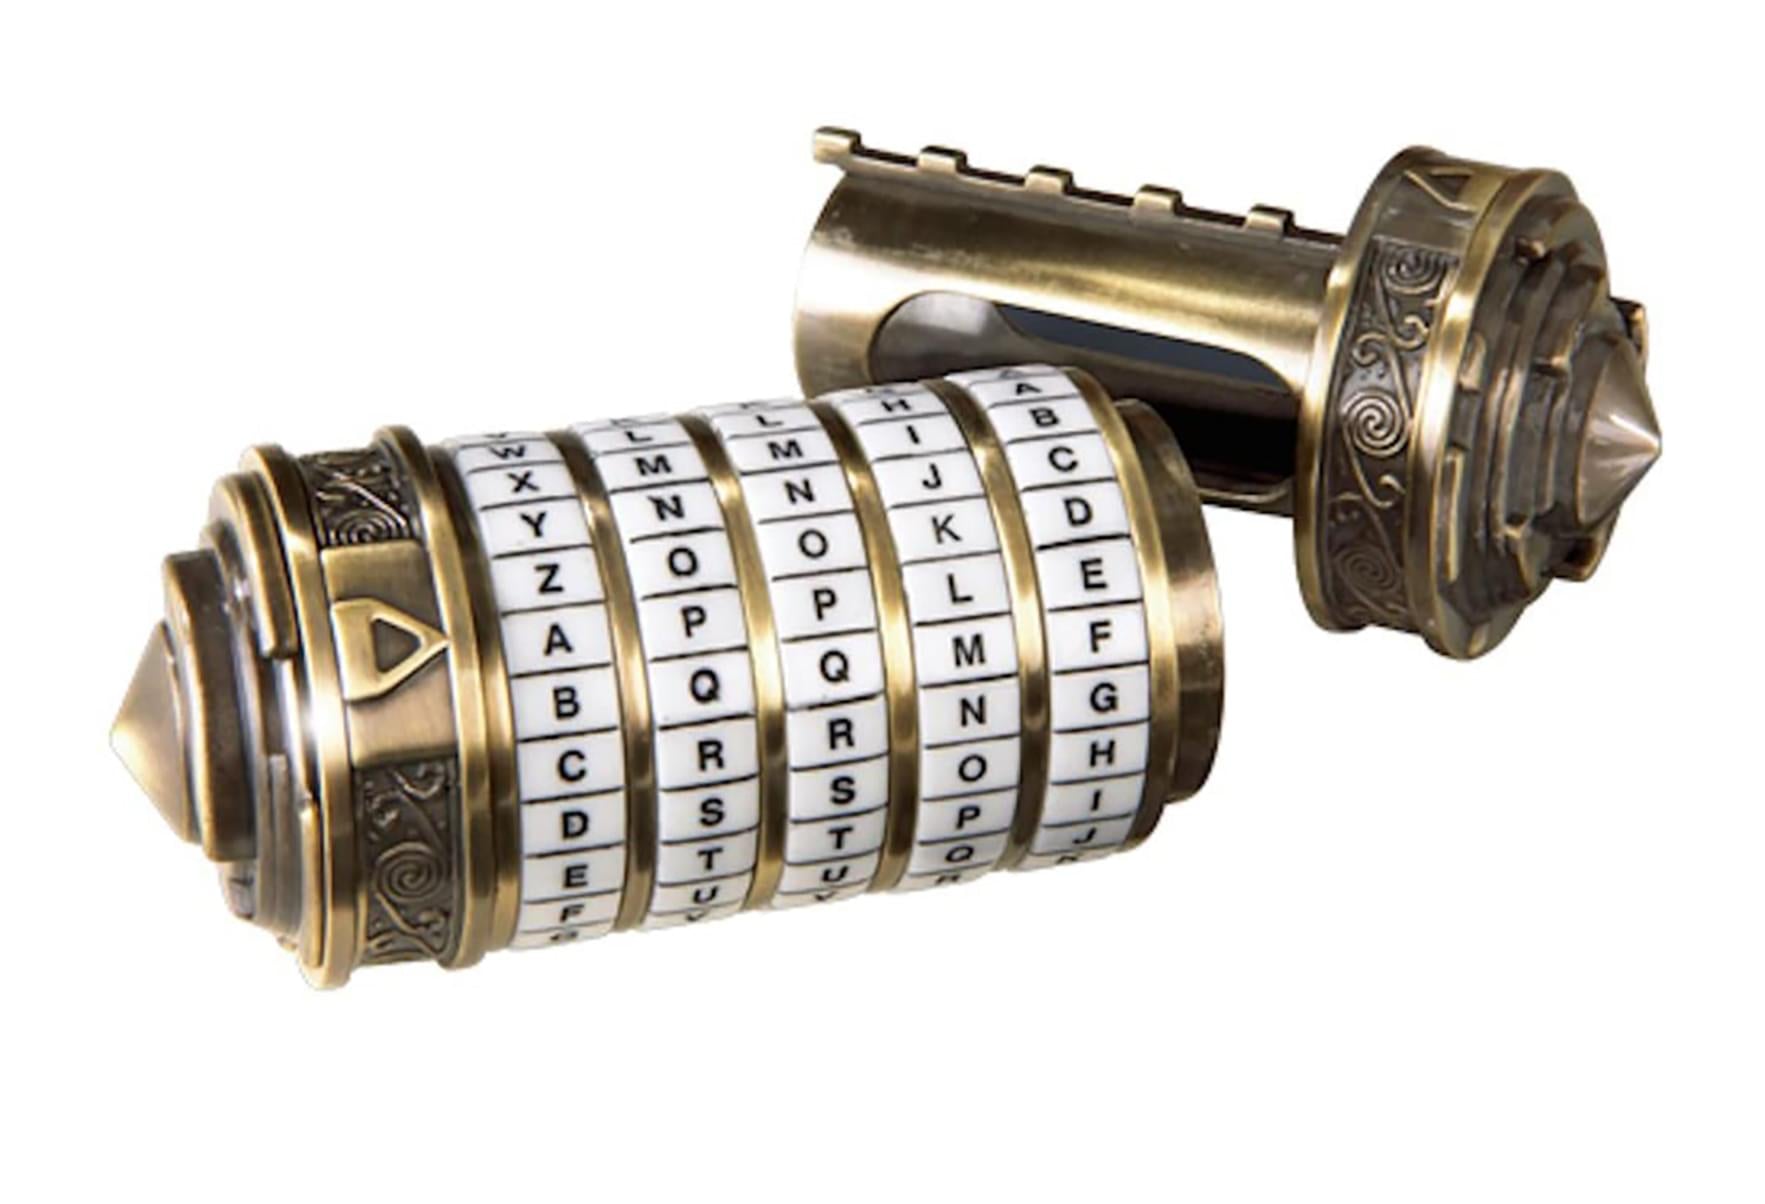 The Da Vinci Code Mini Cryptex Replica